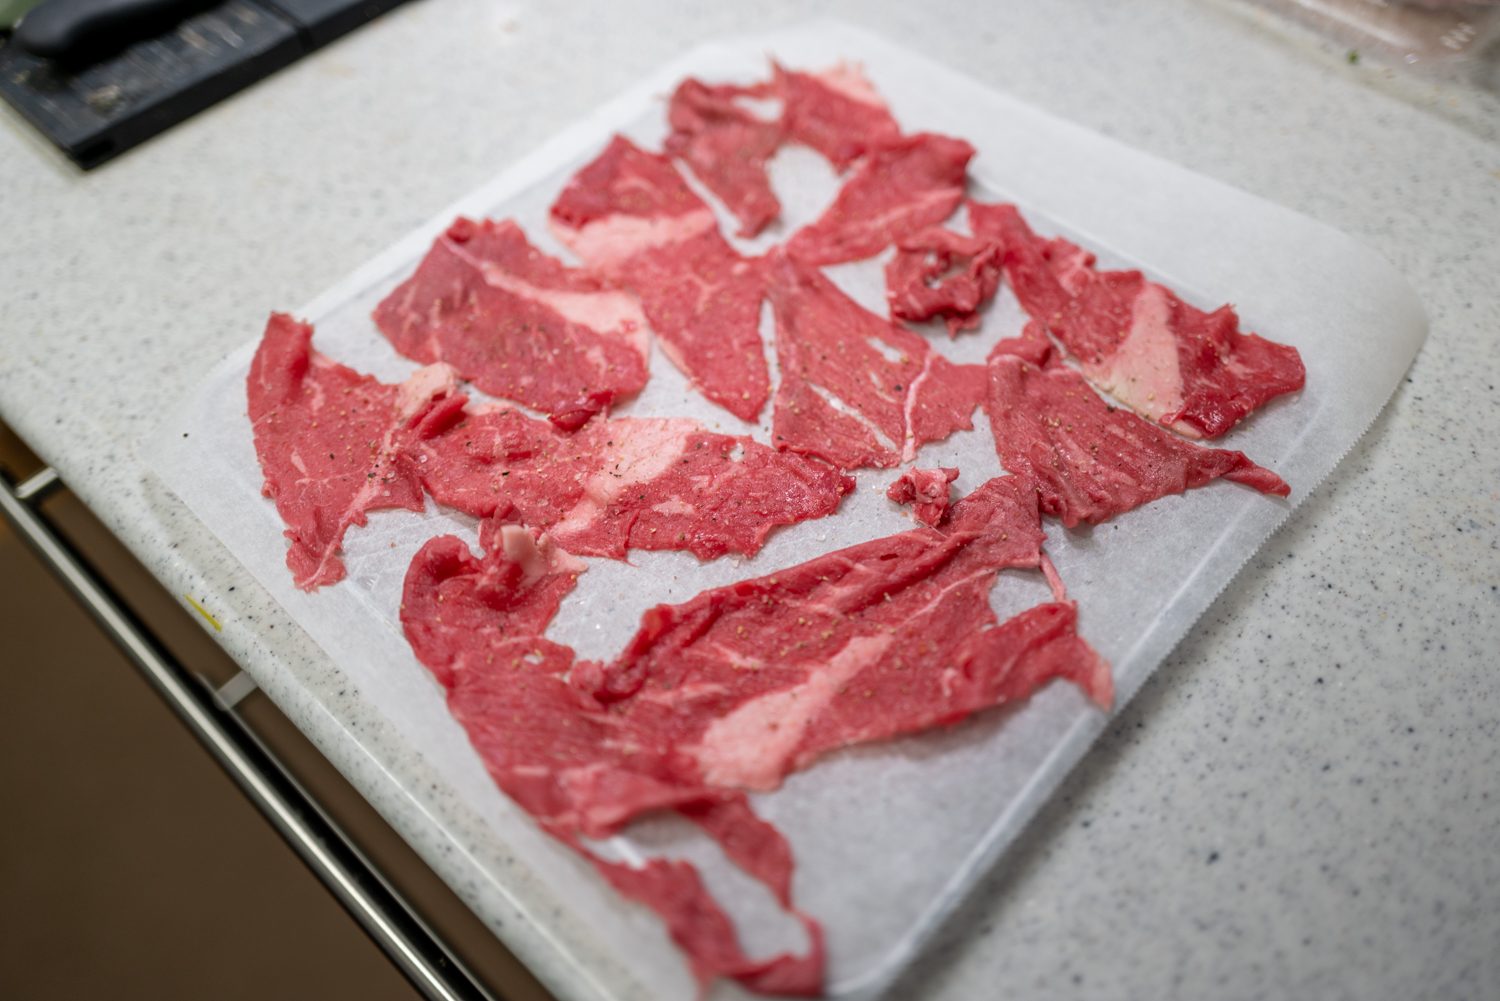 調理前の牛肉をキッチンペーパーの上に並べた様子